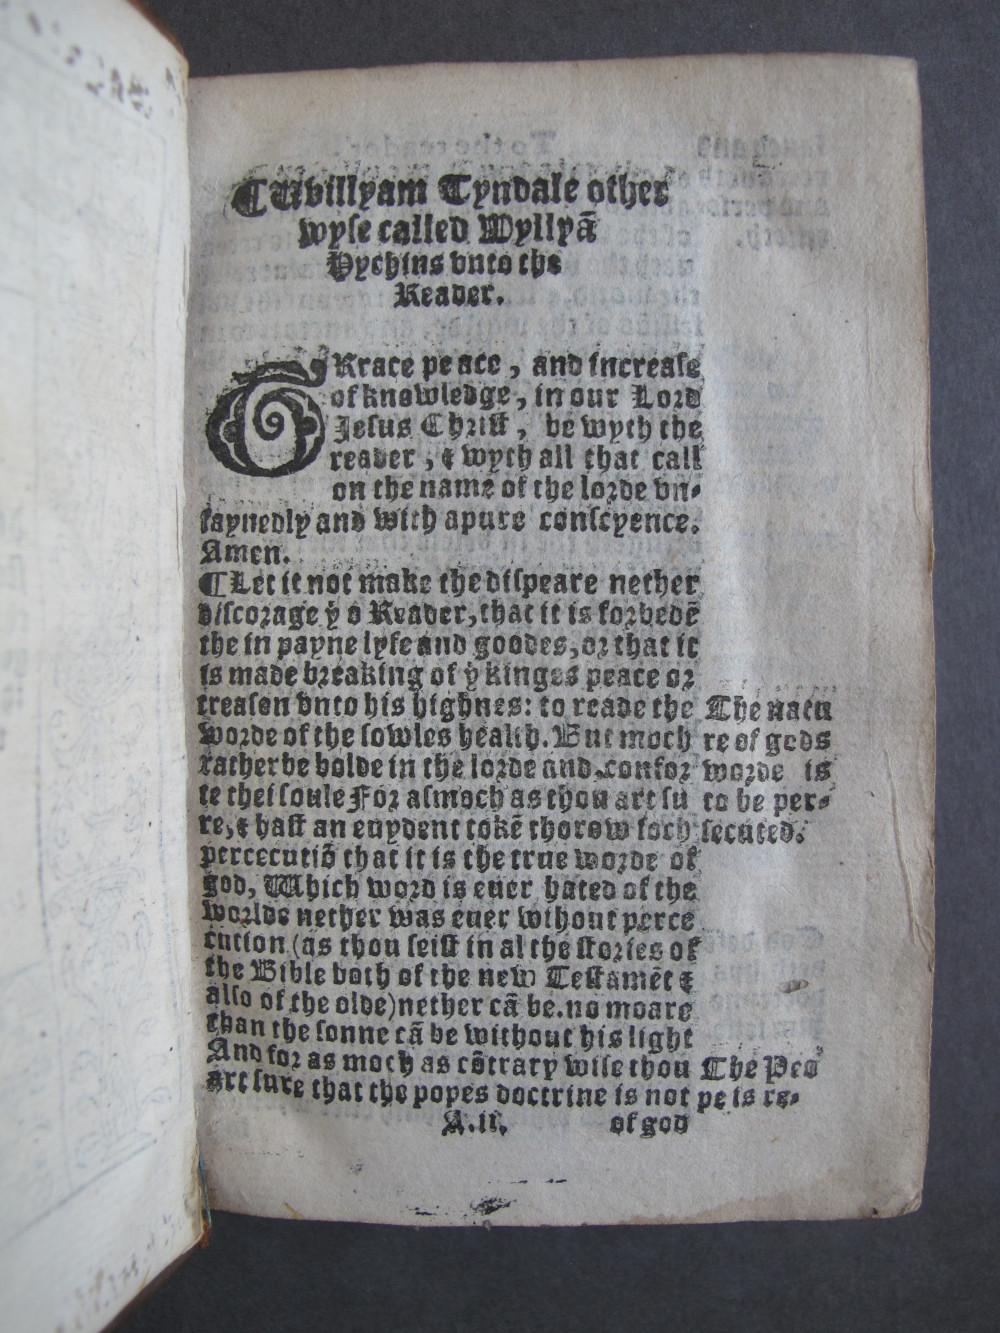 1 Folio A2 recto